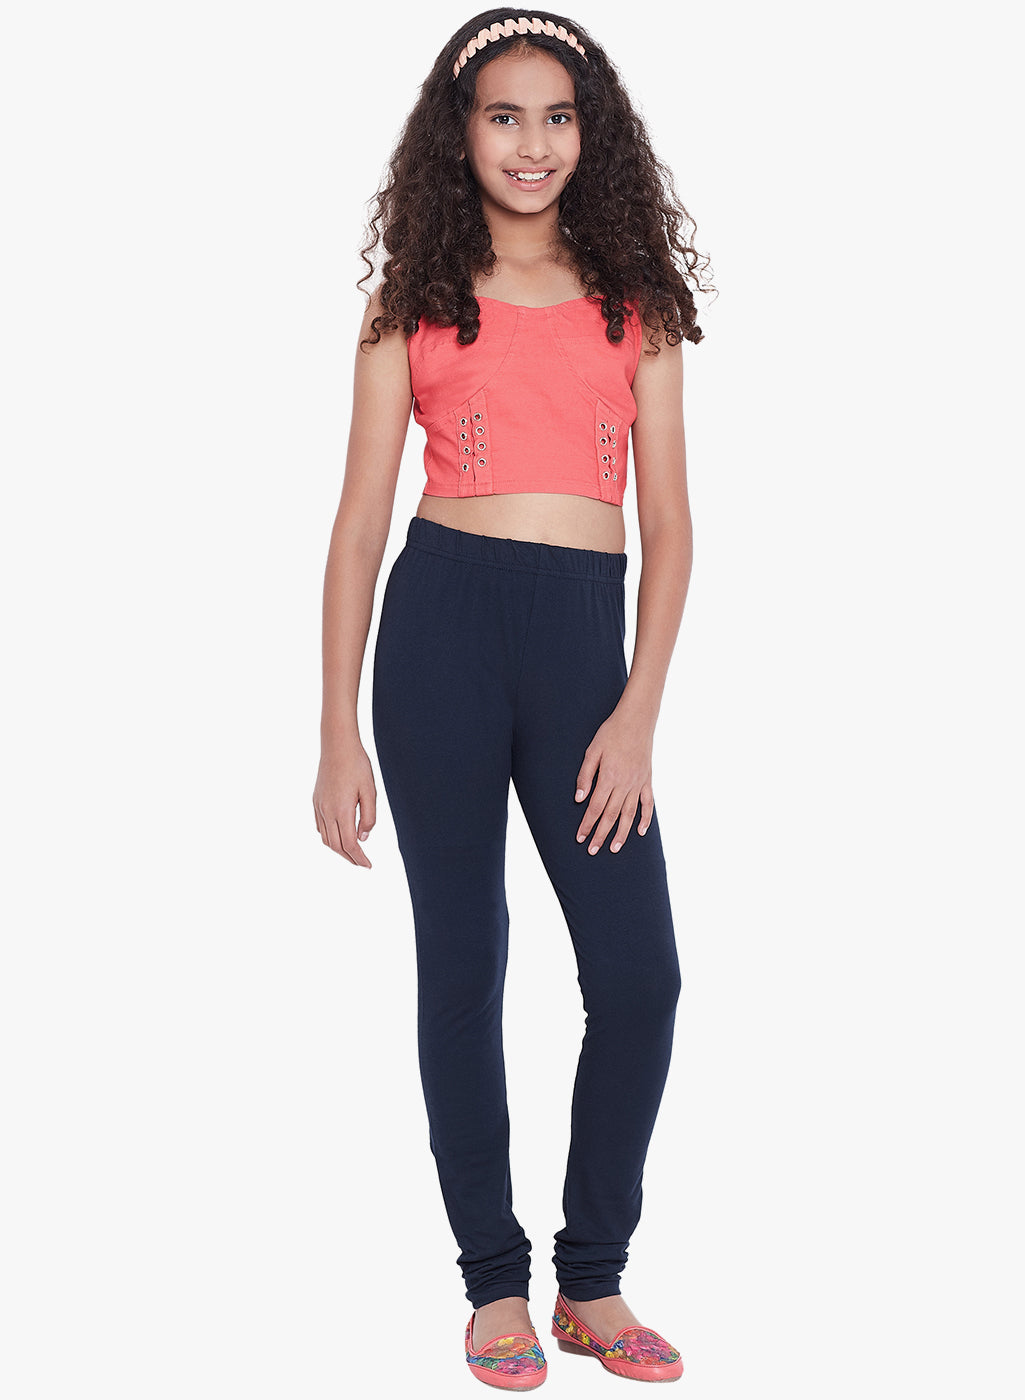 Buy Kryptic Kids Blue Leggings for Girls Clothing Online @ Tata CLiQ